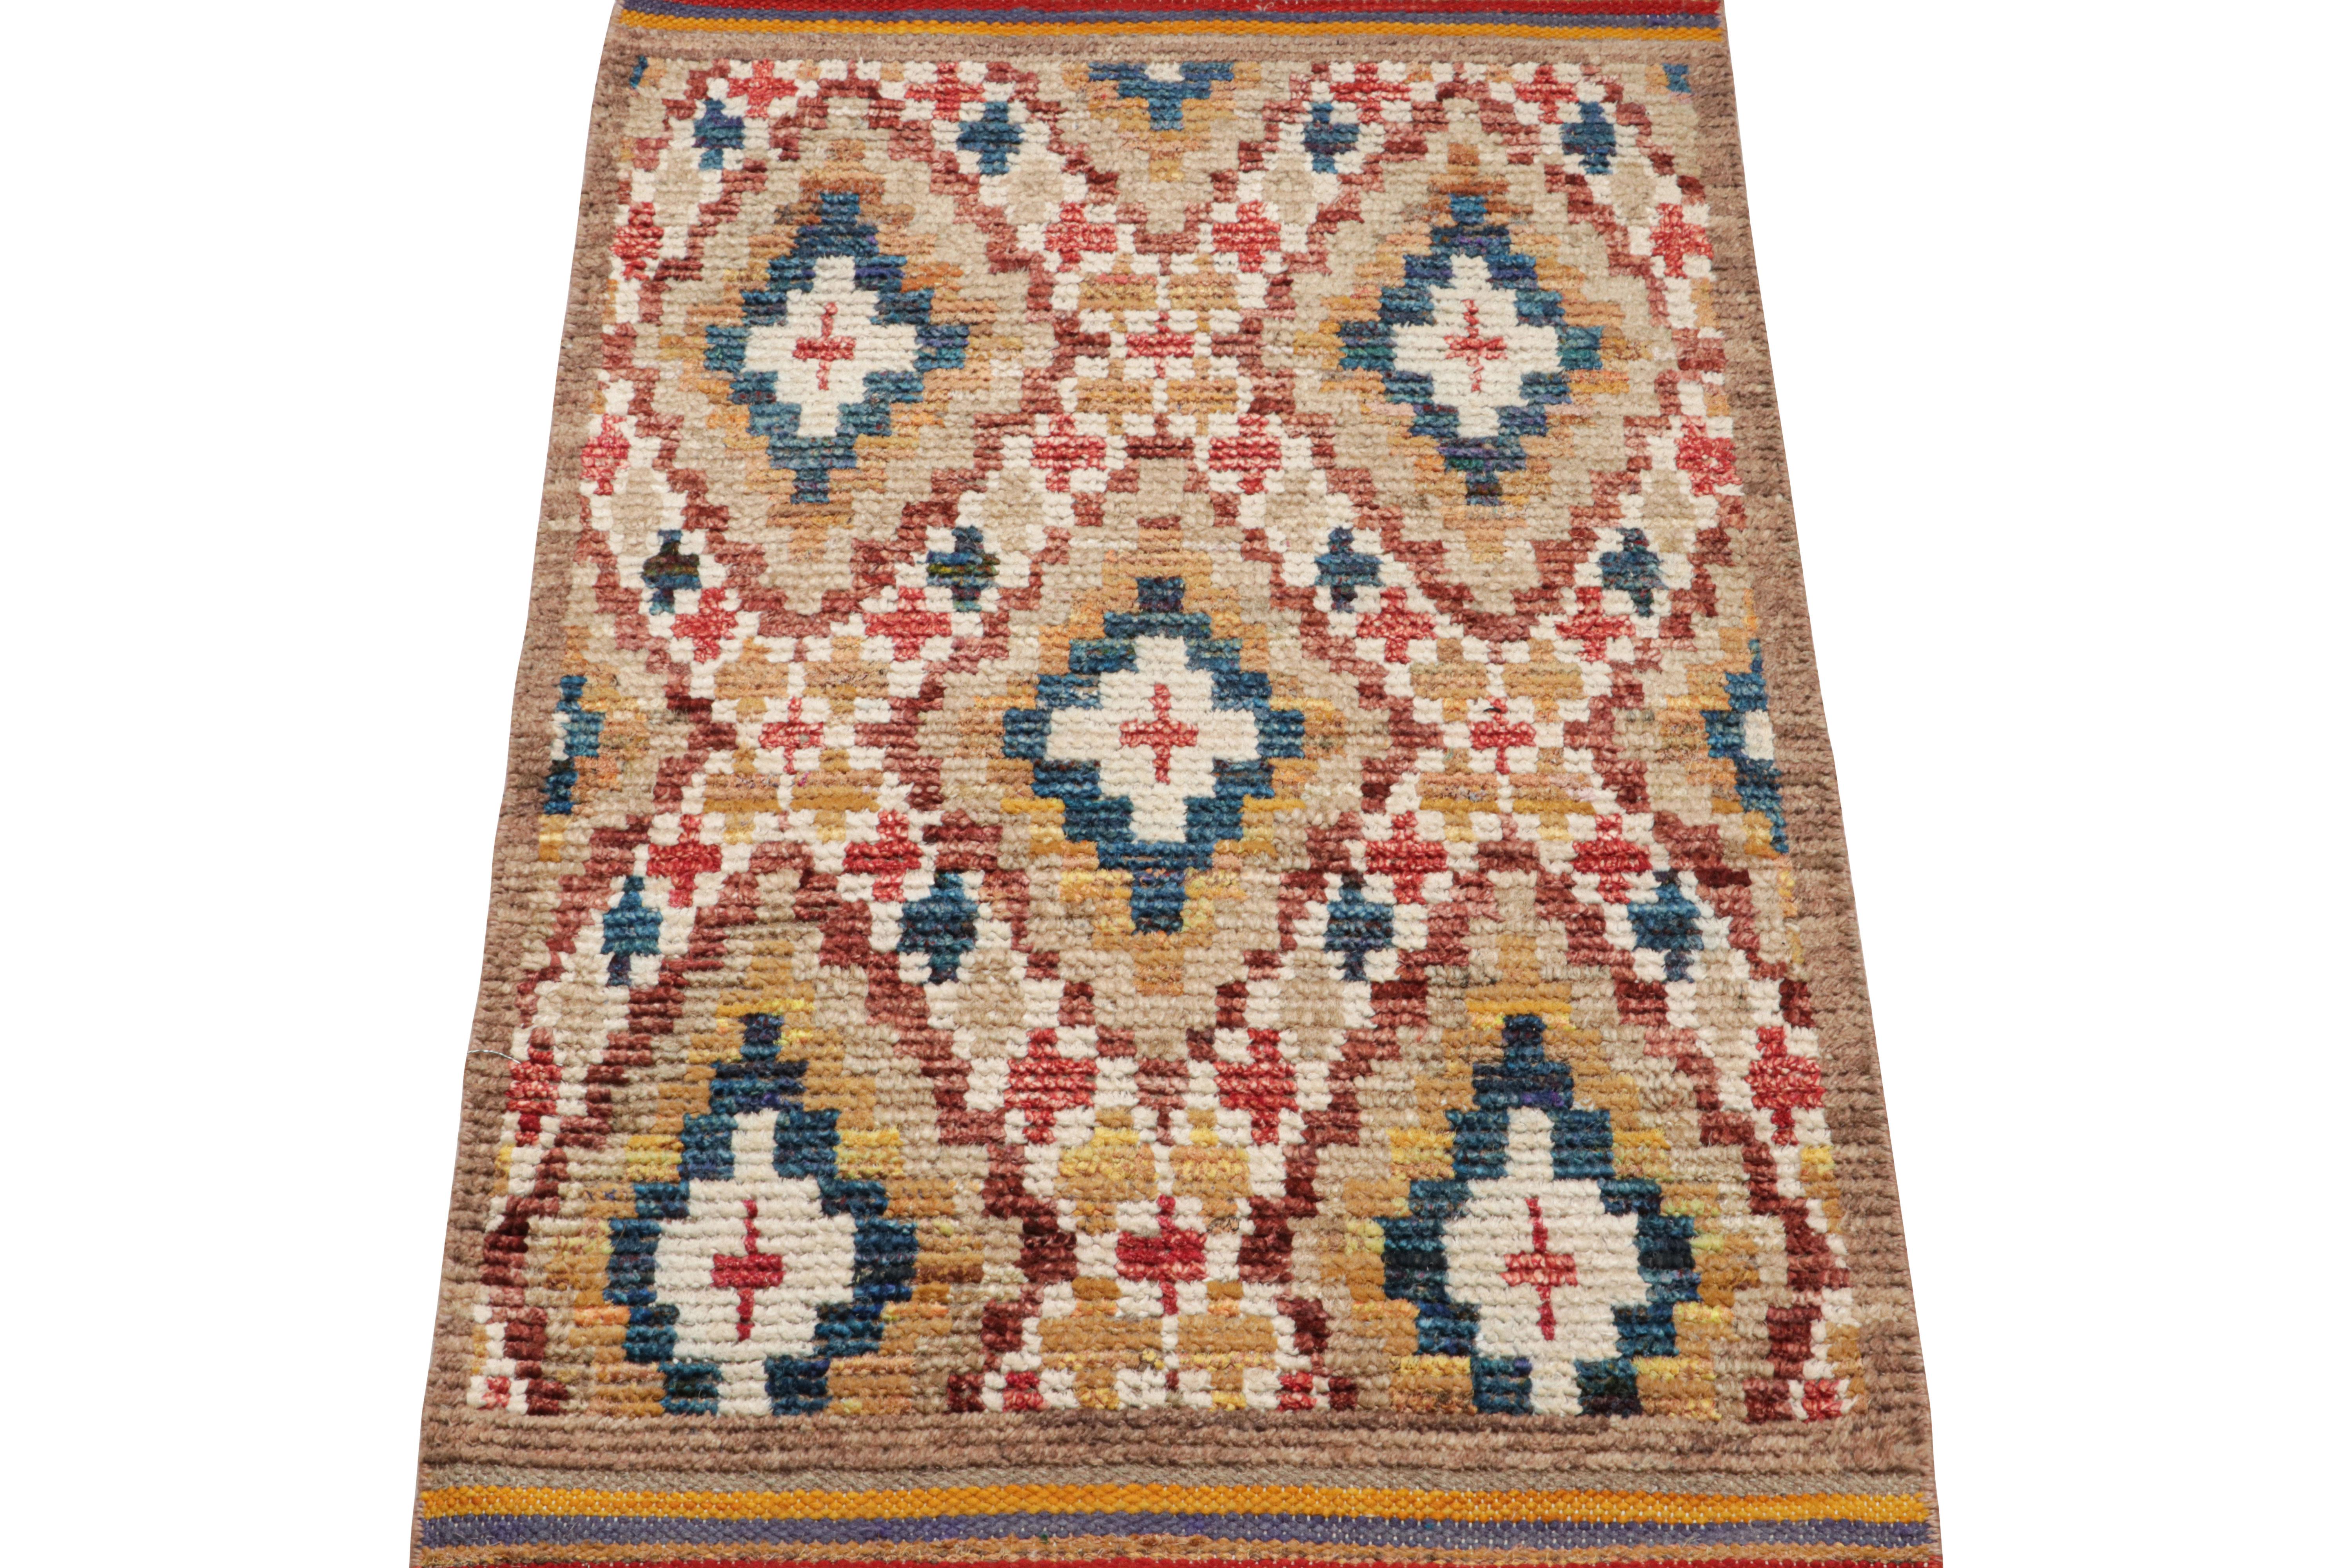 Dieser aus Wolle und Seide handgeknüpfte marokkanische Teppich (2x3) weist geometrische Muster auf, die von den primitiven Webtraditionen der Berber inspiriert sind, sowie eine gerippte Textur, die an die Sensibilität der Boucherouite erinnert.